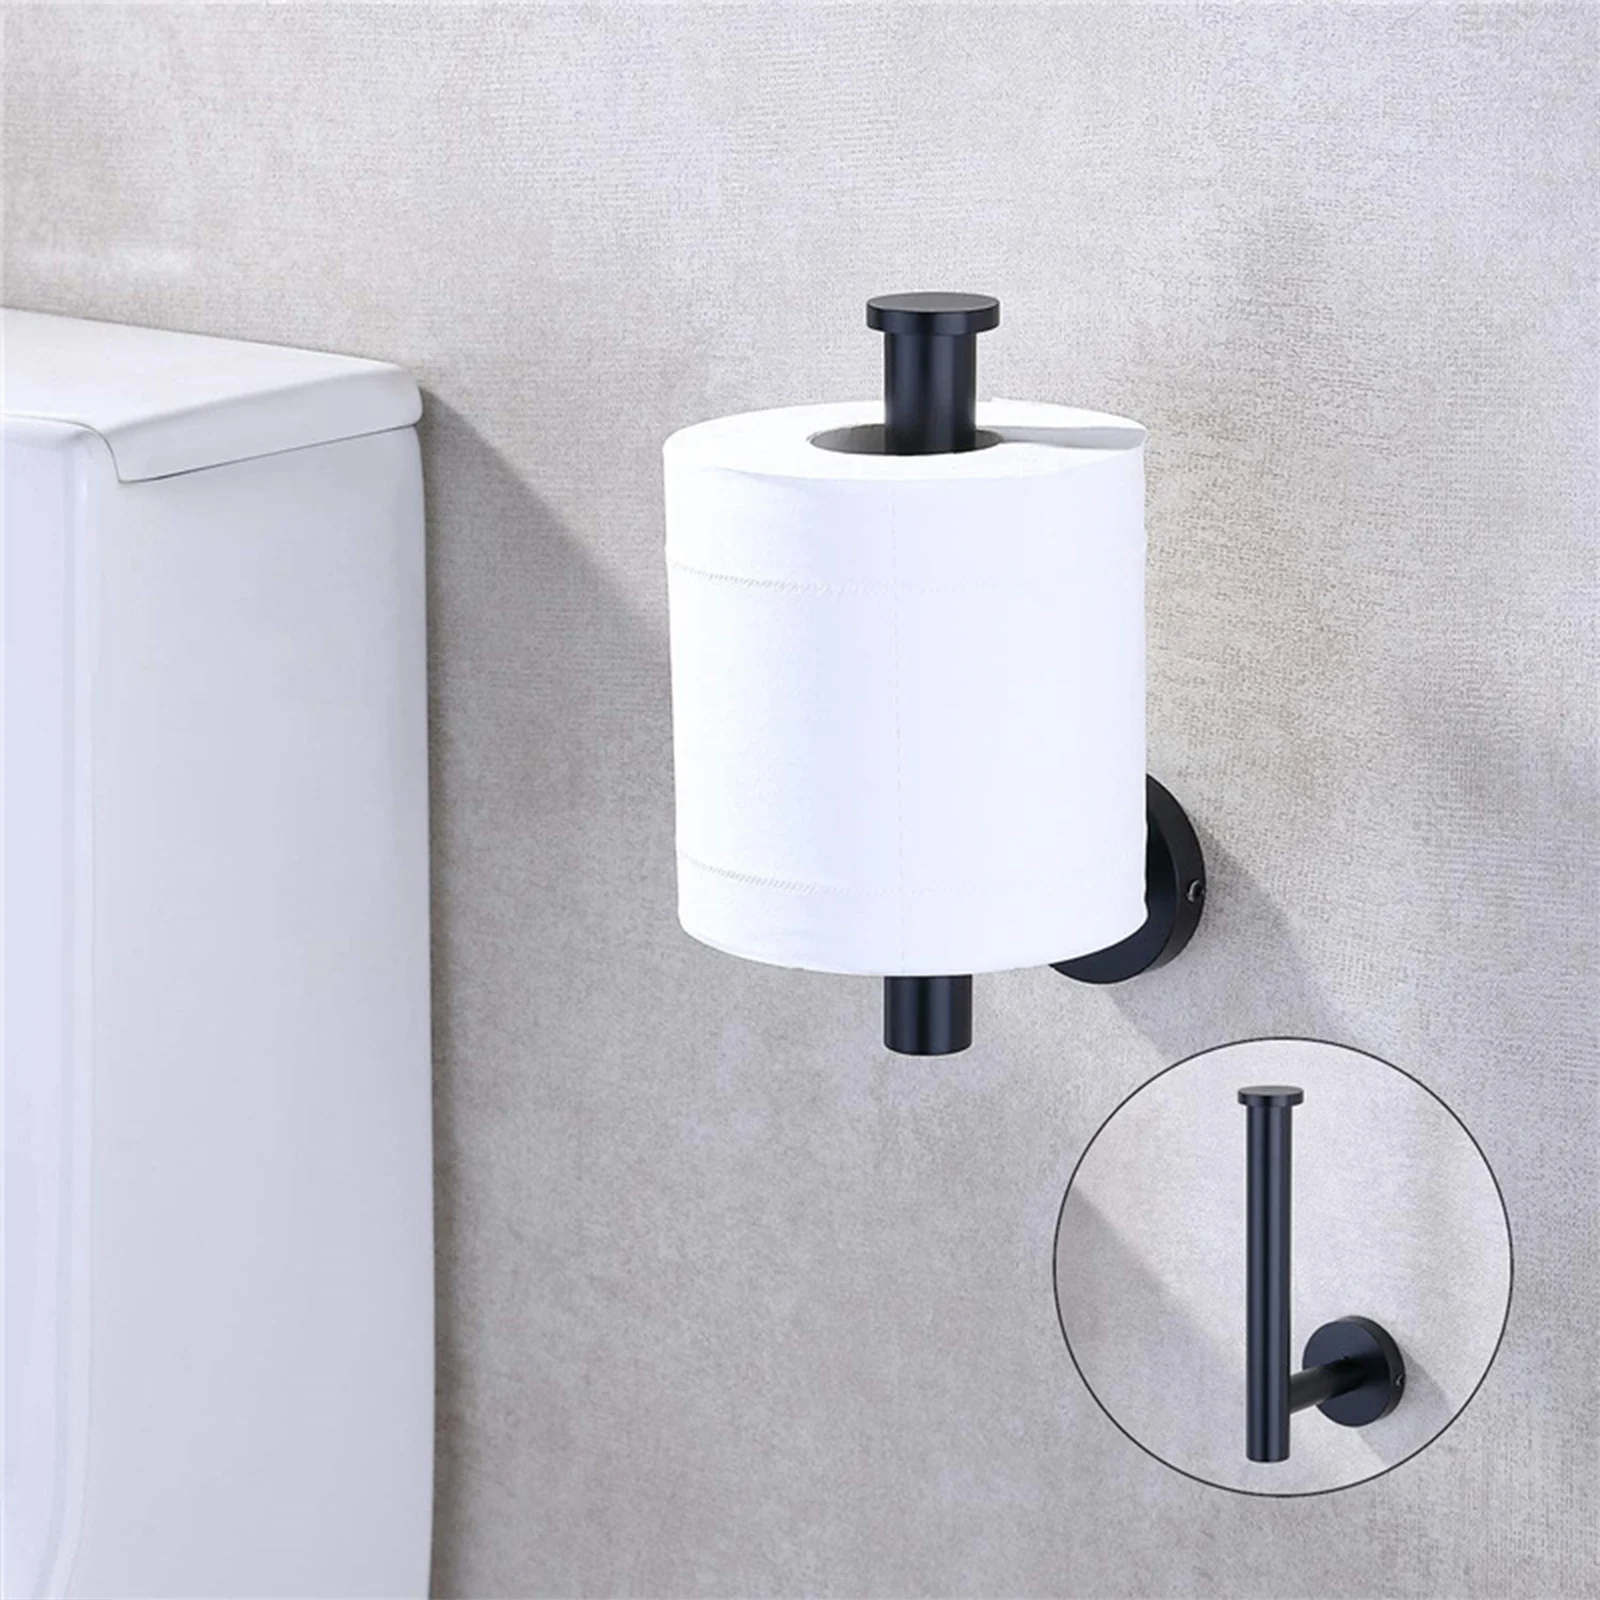 Toilet Brush & Paper Holder Bathroom Tissue Roll Storage Stainless Steel Base 